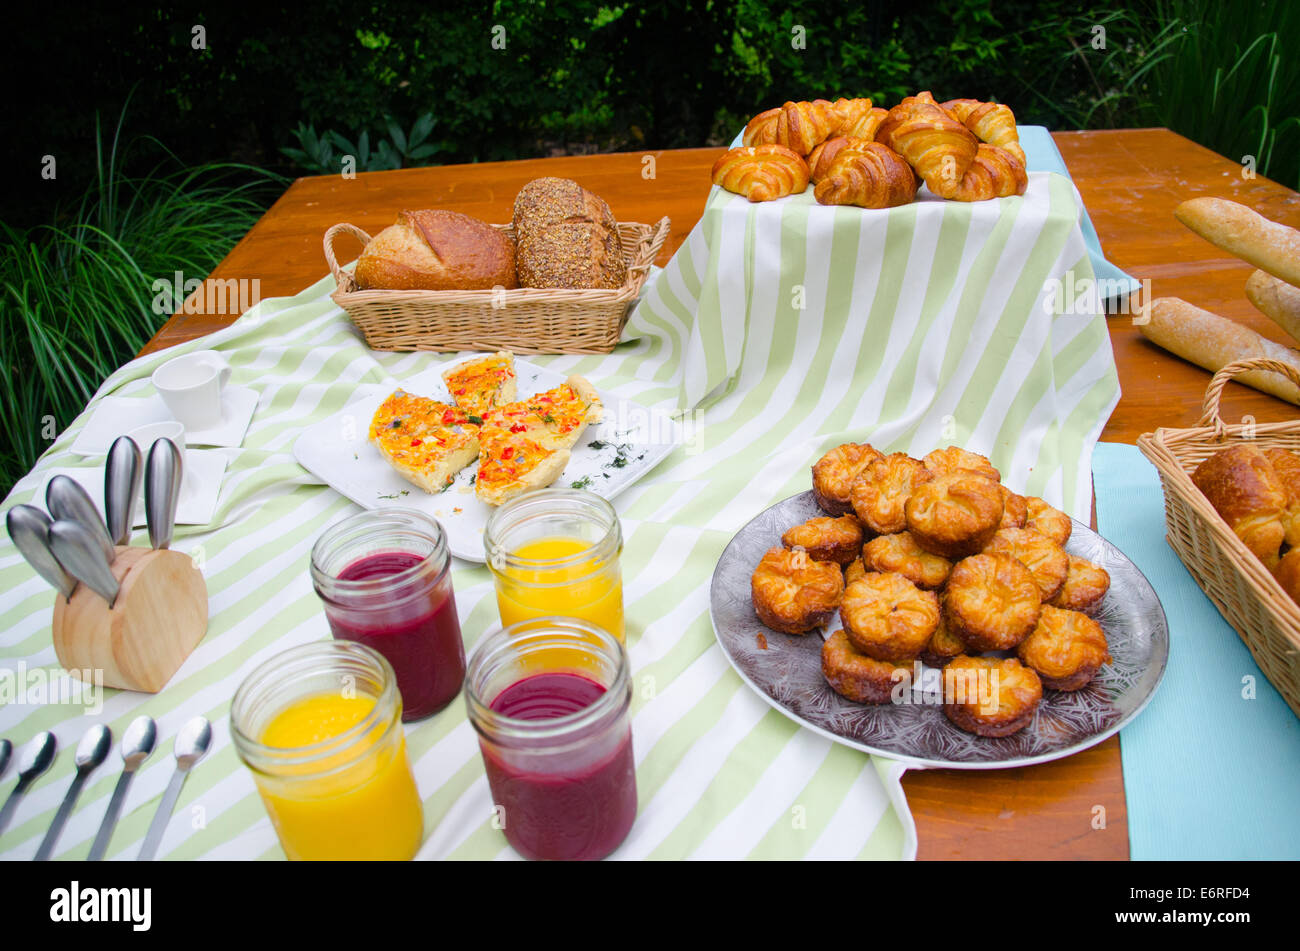 Pique-nique de petit-déjeuner buffet composé de jus de fruits, pâtisseries, croissants, pain, panier, tapis de table, d'ustensiles, des baguettes sur une table Banque D'Images